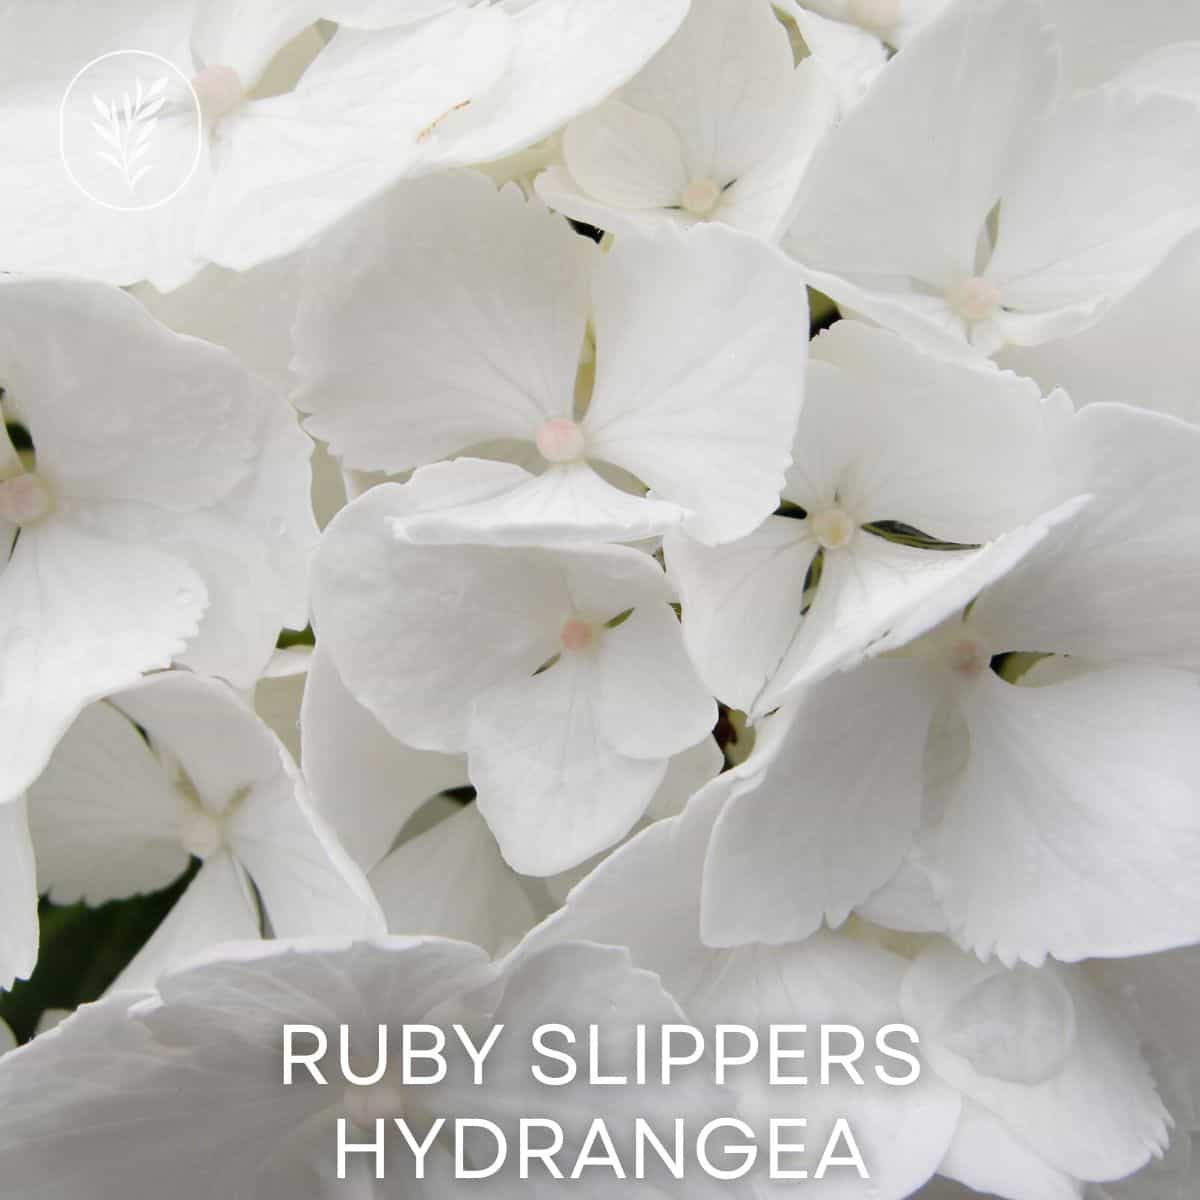 Ruby slippers hydrangea via @home4theharvest